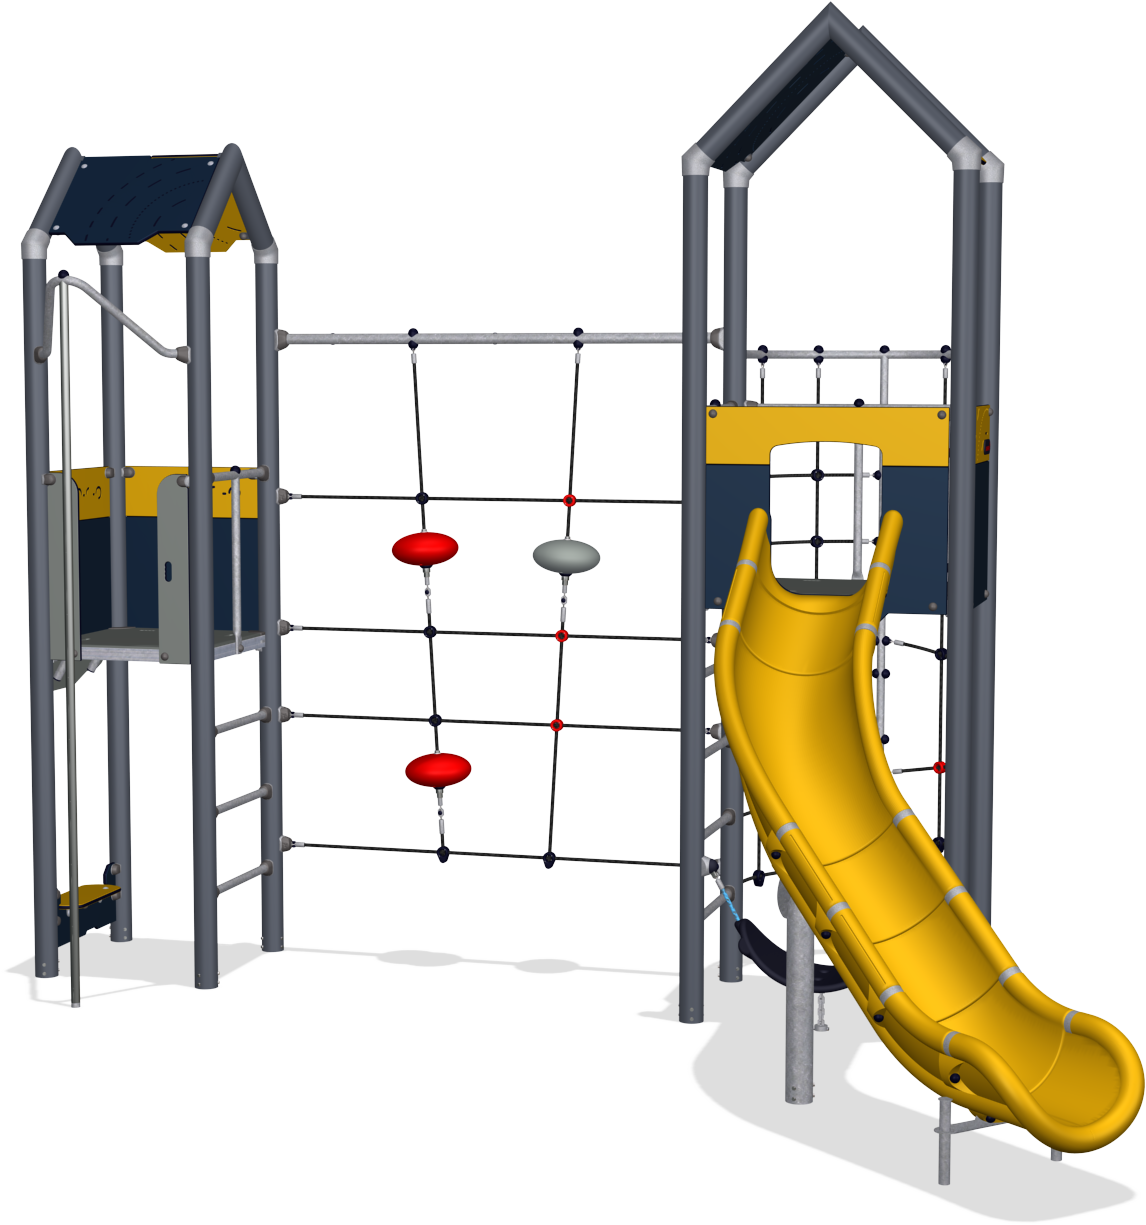 Product Jpg - Playground Slide (1146x1225)